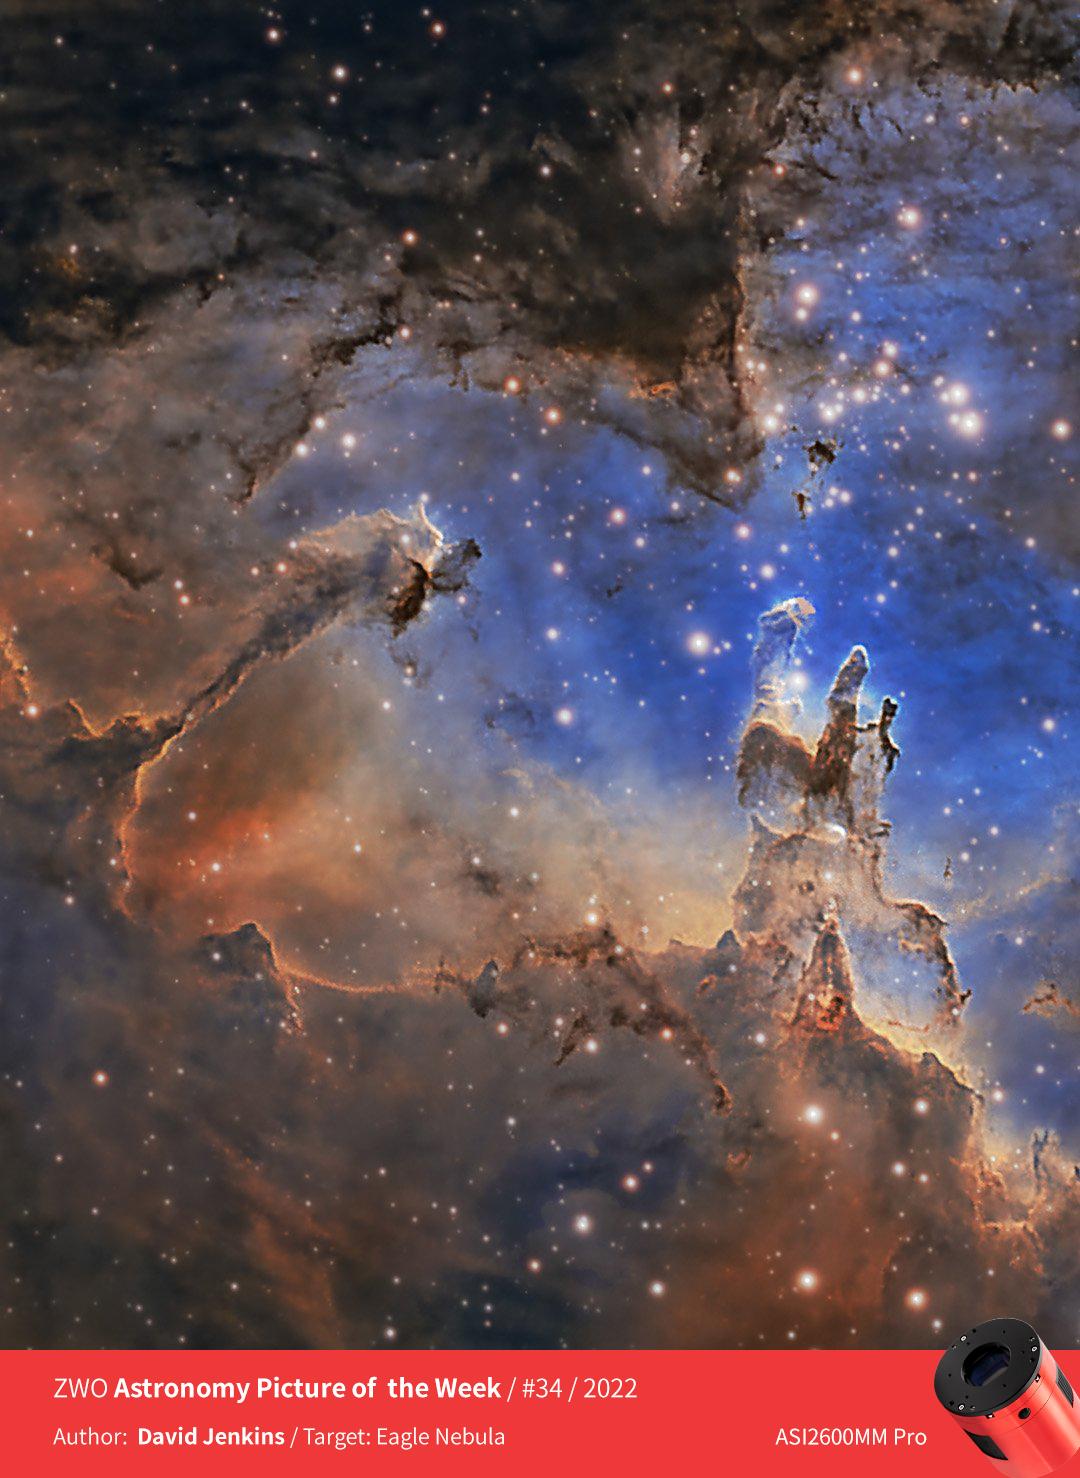 zwo 2022年 asiweek 天文摄影作品展第34期 — eagle nebula(鹰状星云